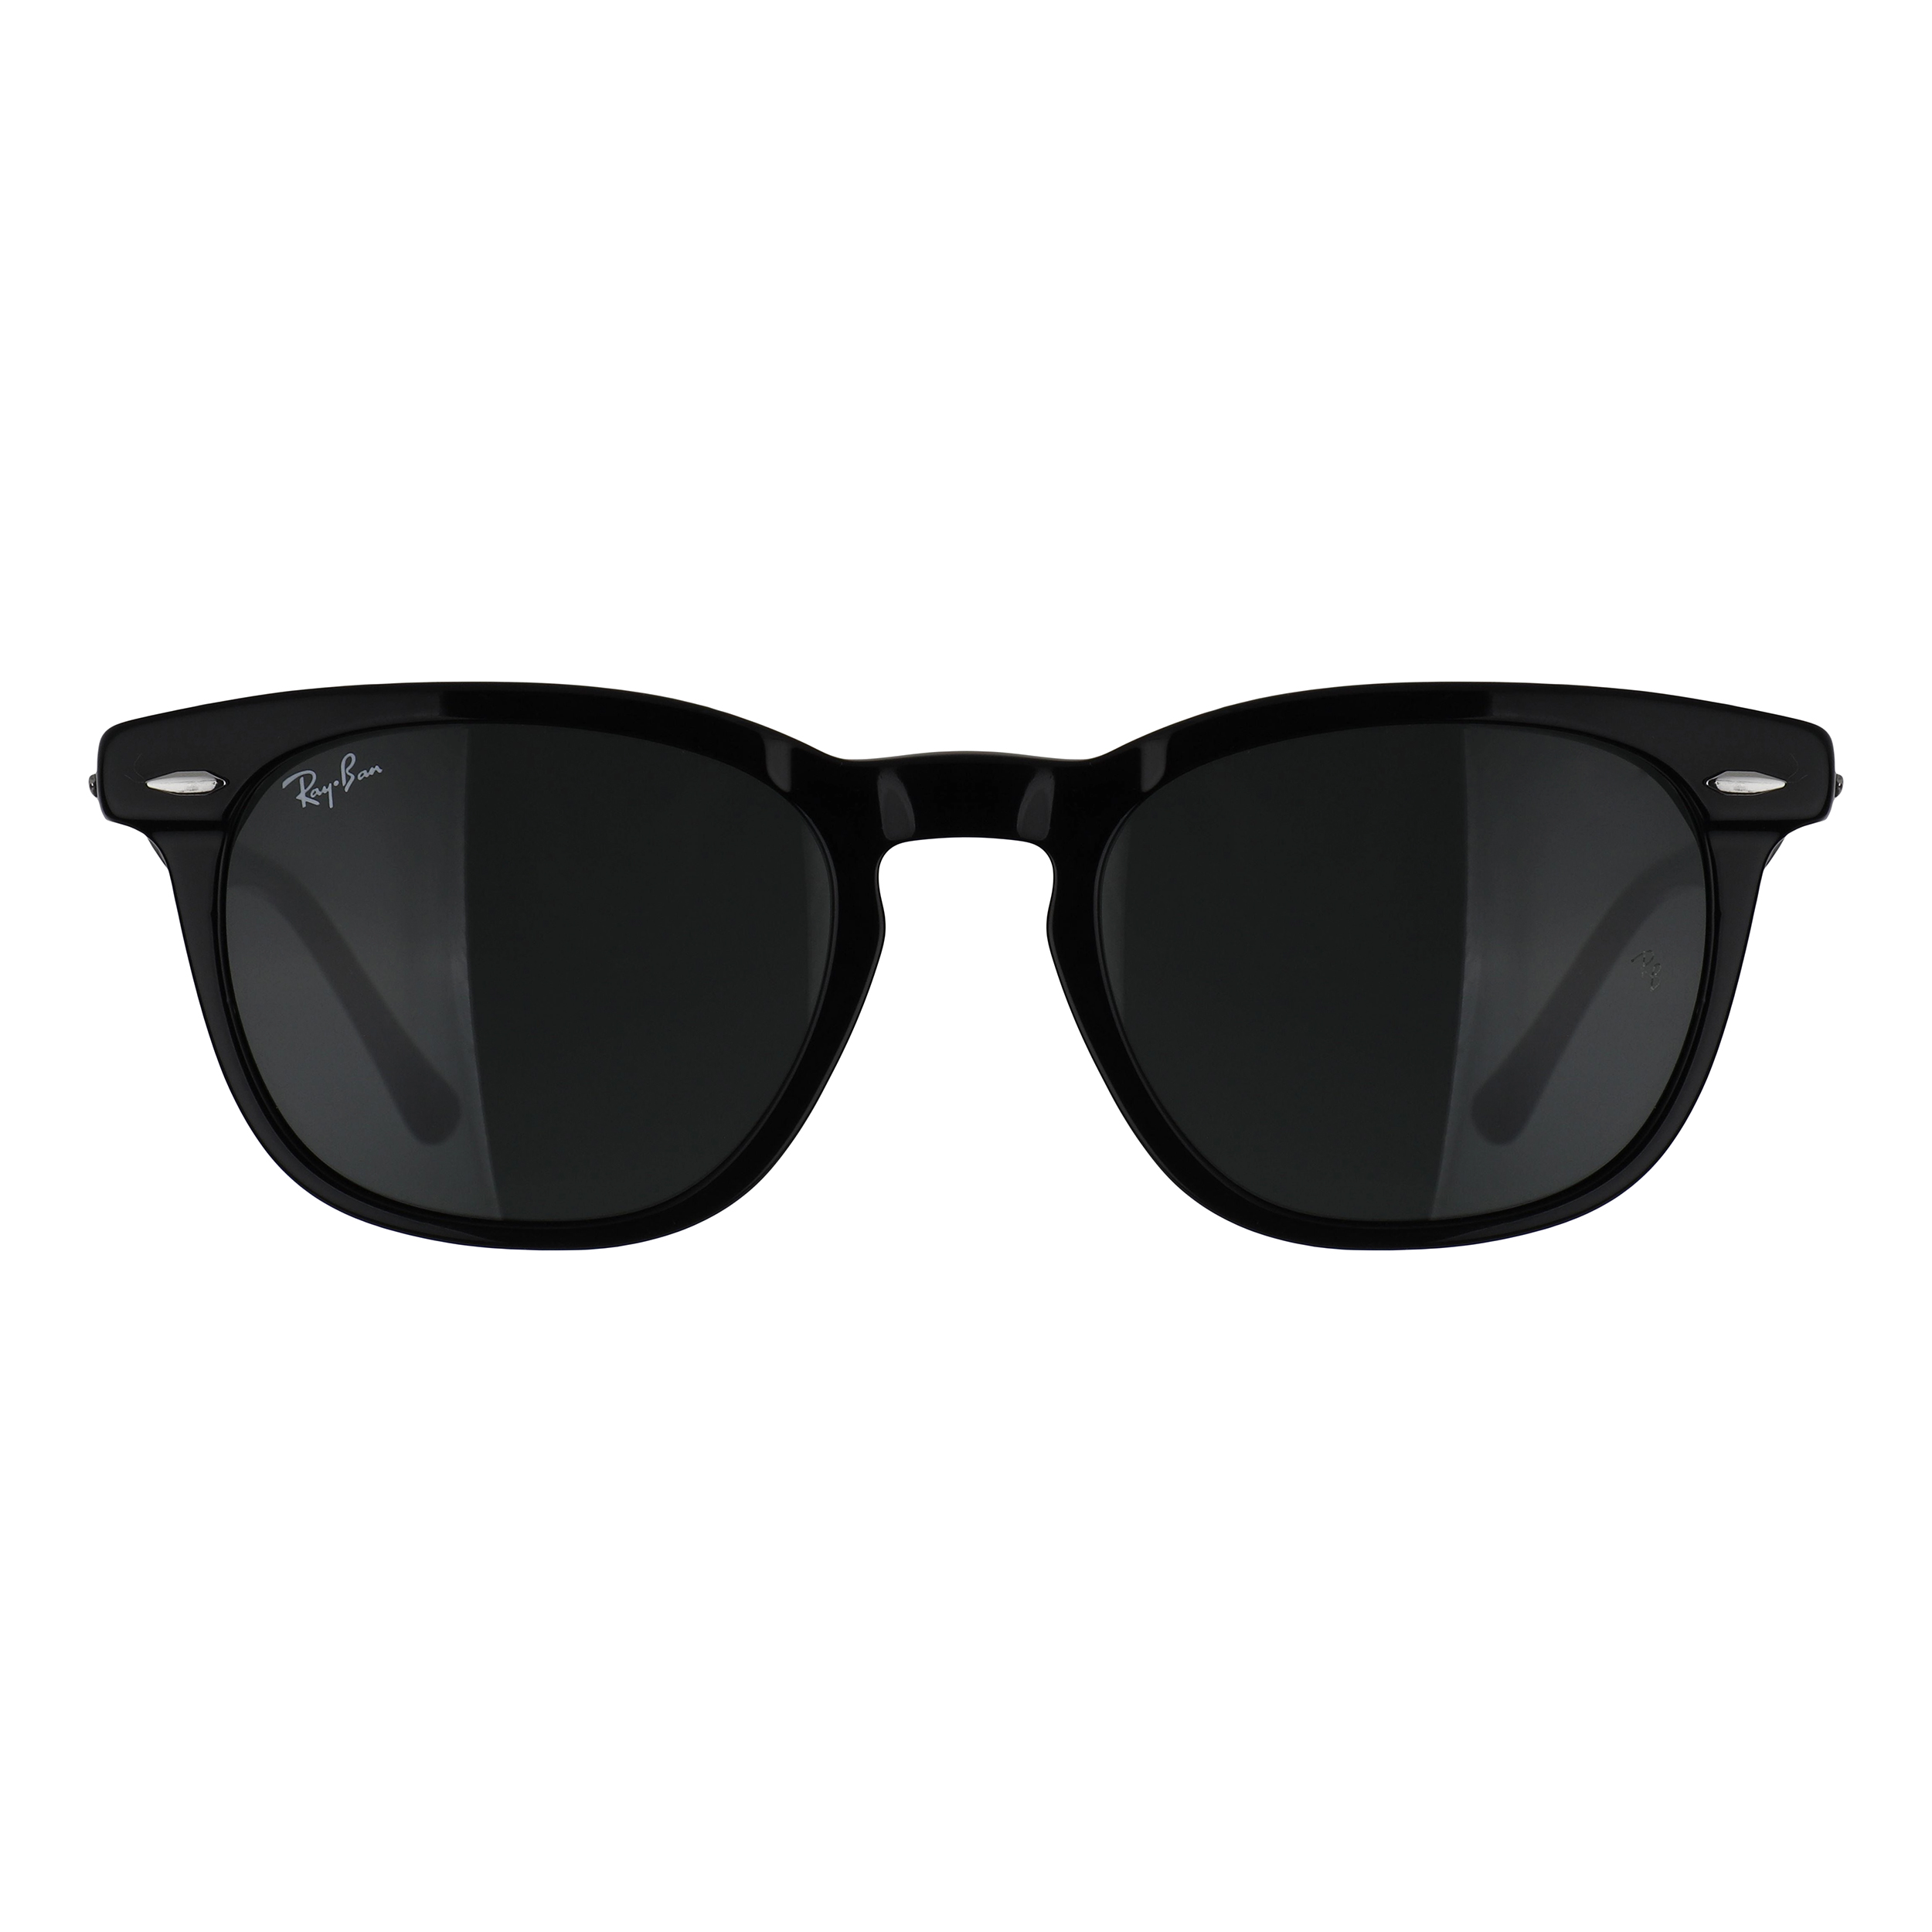 نکته خرید - قیمت روز  عینک آفتابی ری بن مدل 2298-901/39 خرید